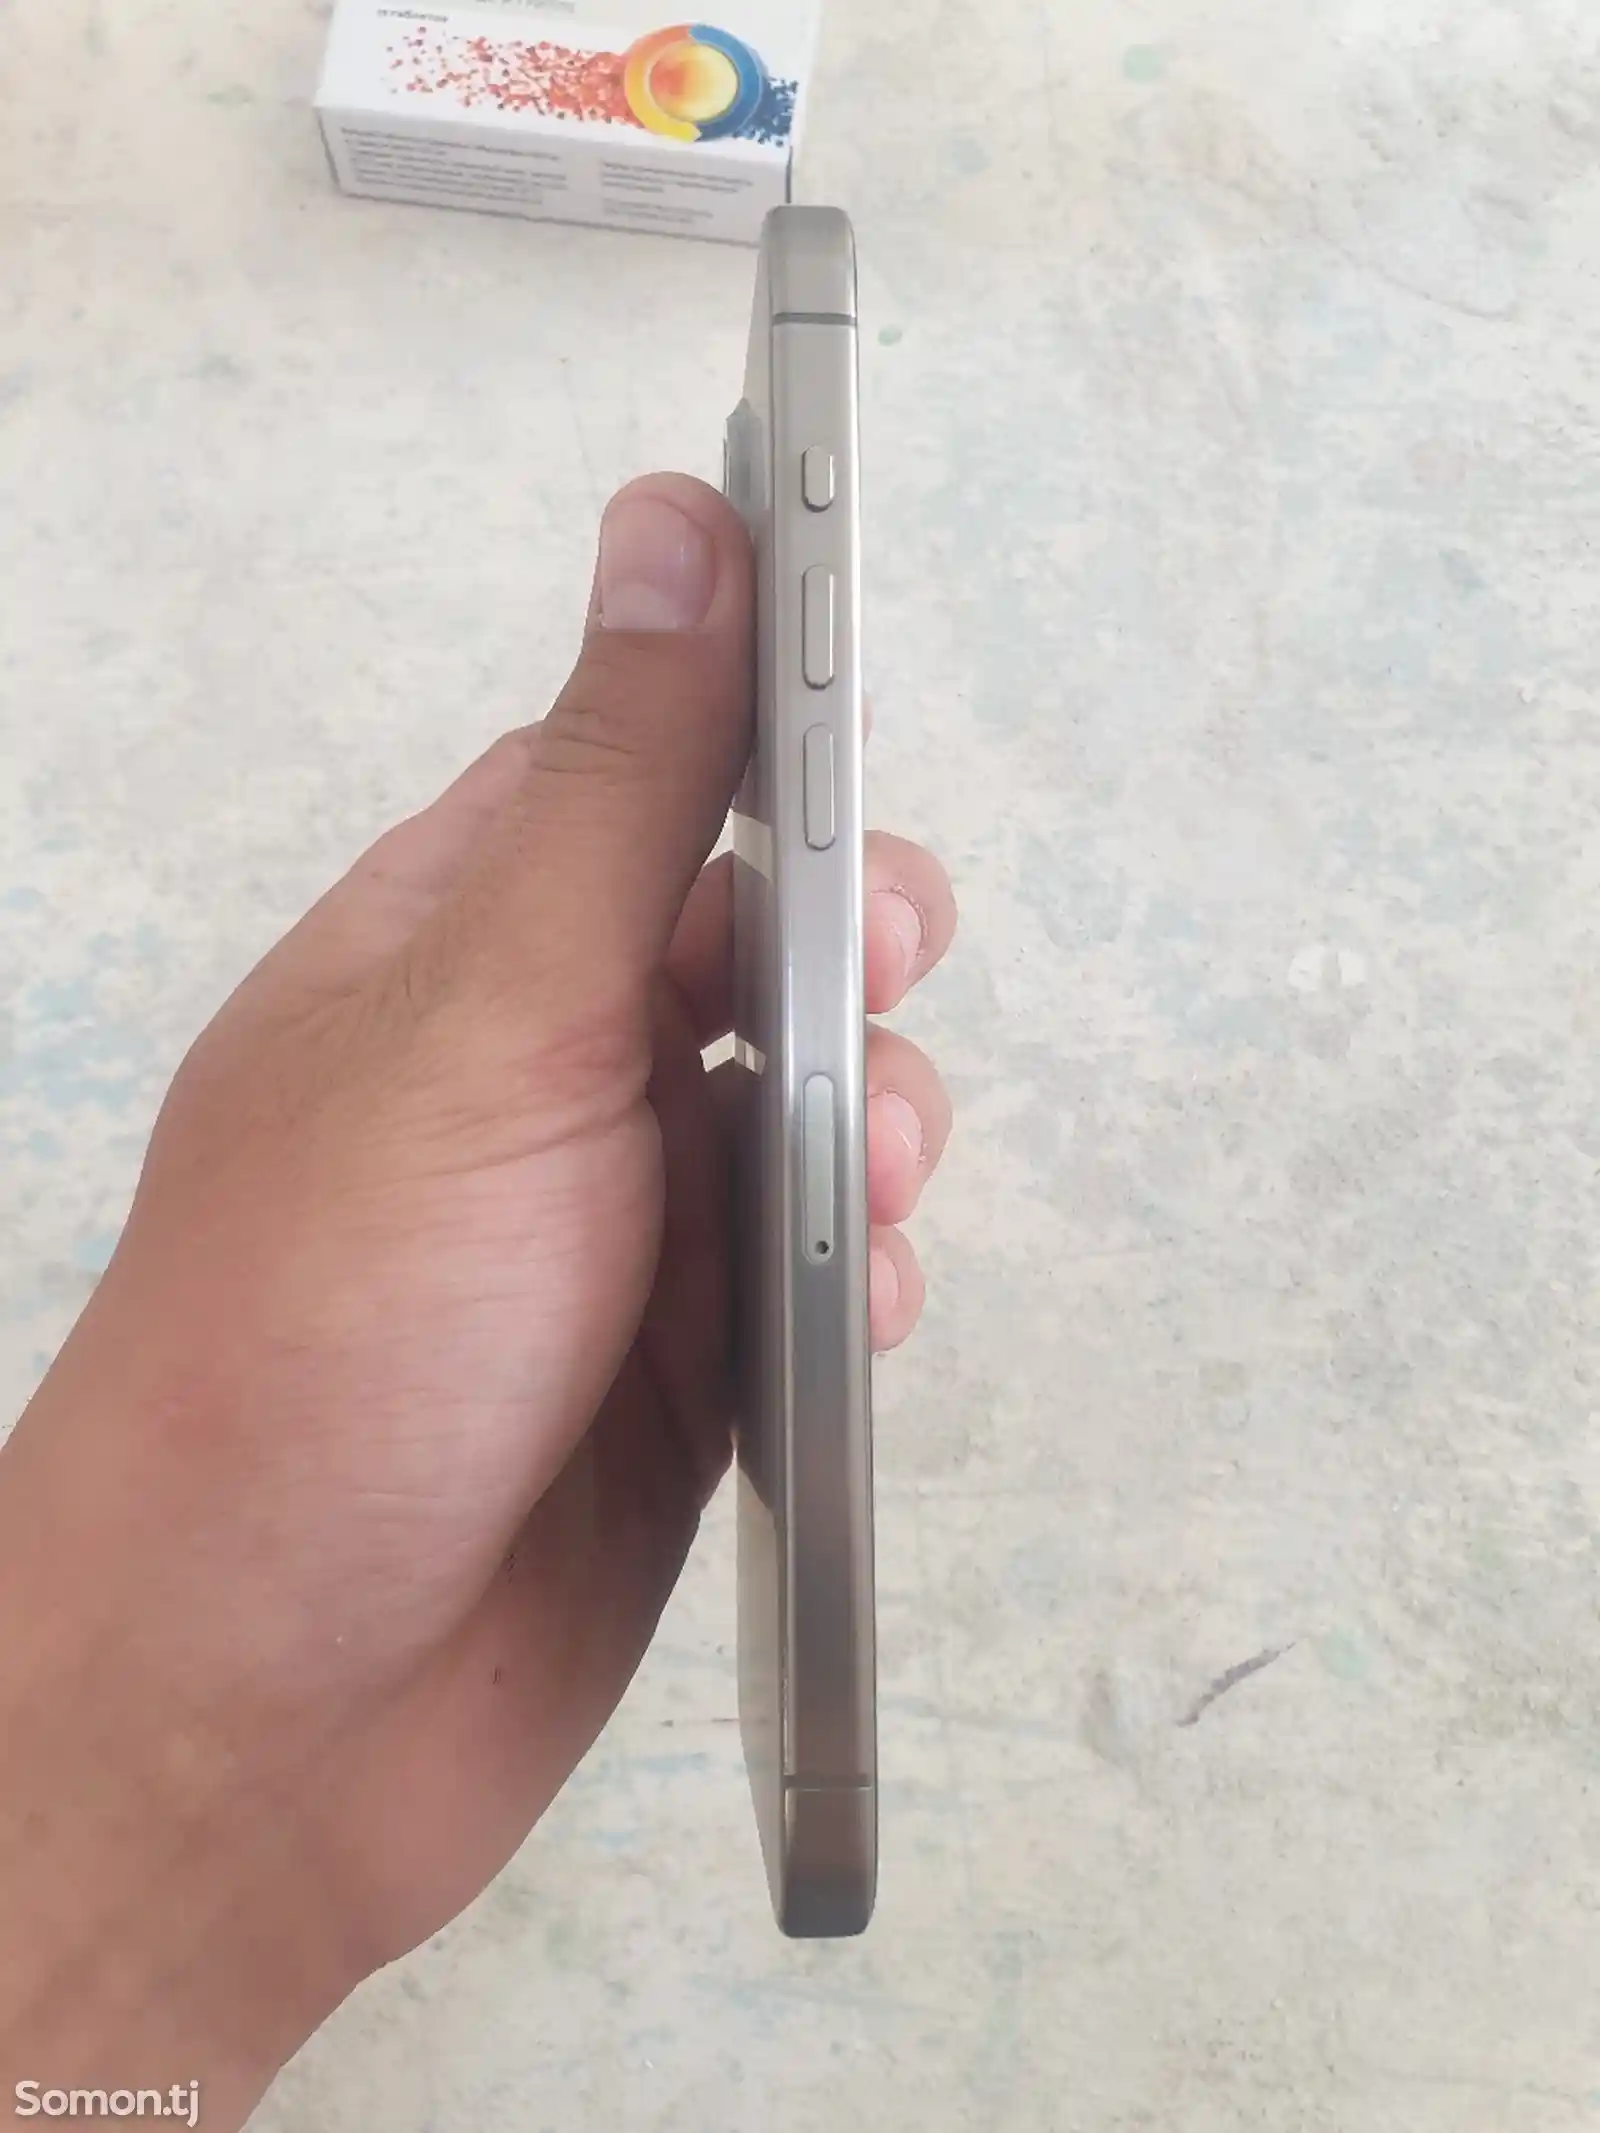 Apple iPhone 15 Pro Max, 1 tb, Natural Titanium-3